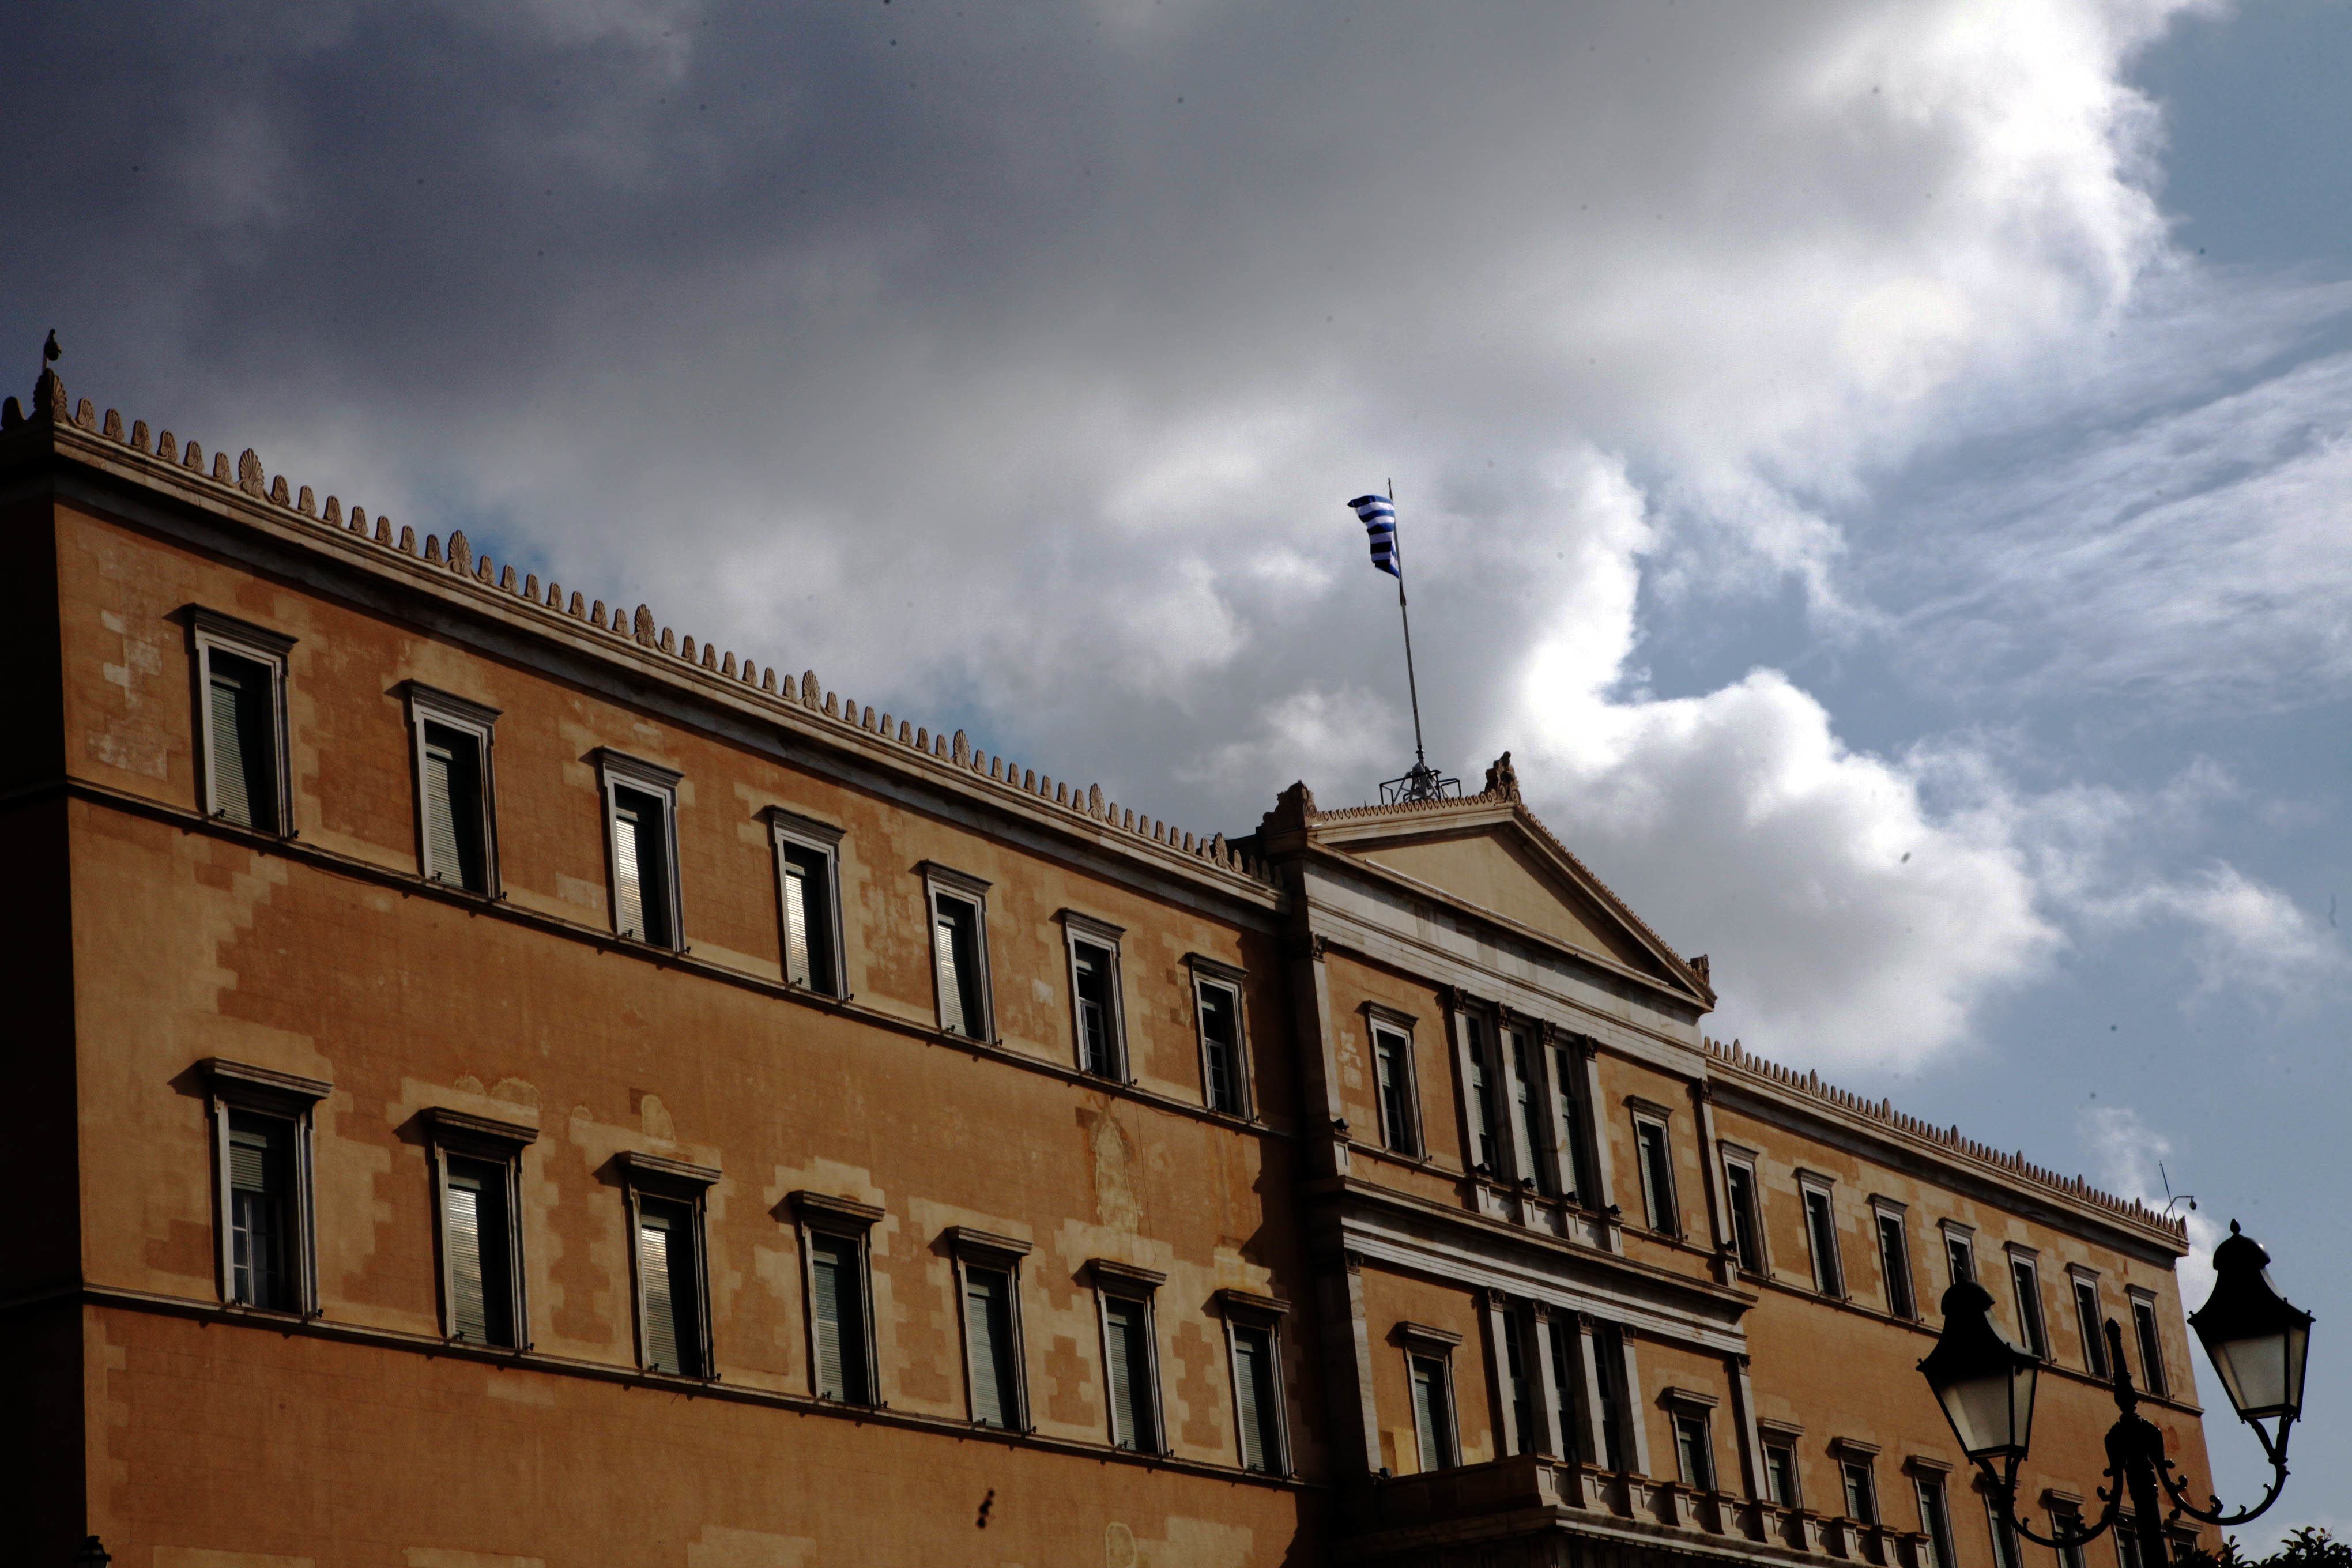 Σε άλλο νομοσχέδιο η τροπολογία για τις κυπριακές τράπεζες στην Ελλάδα